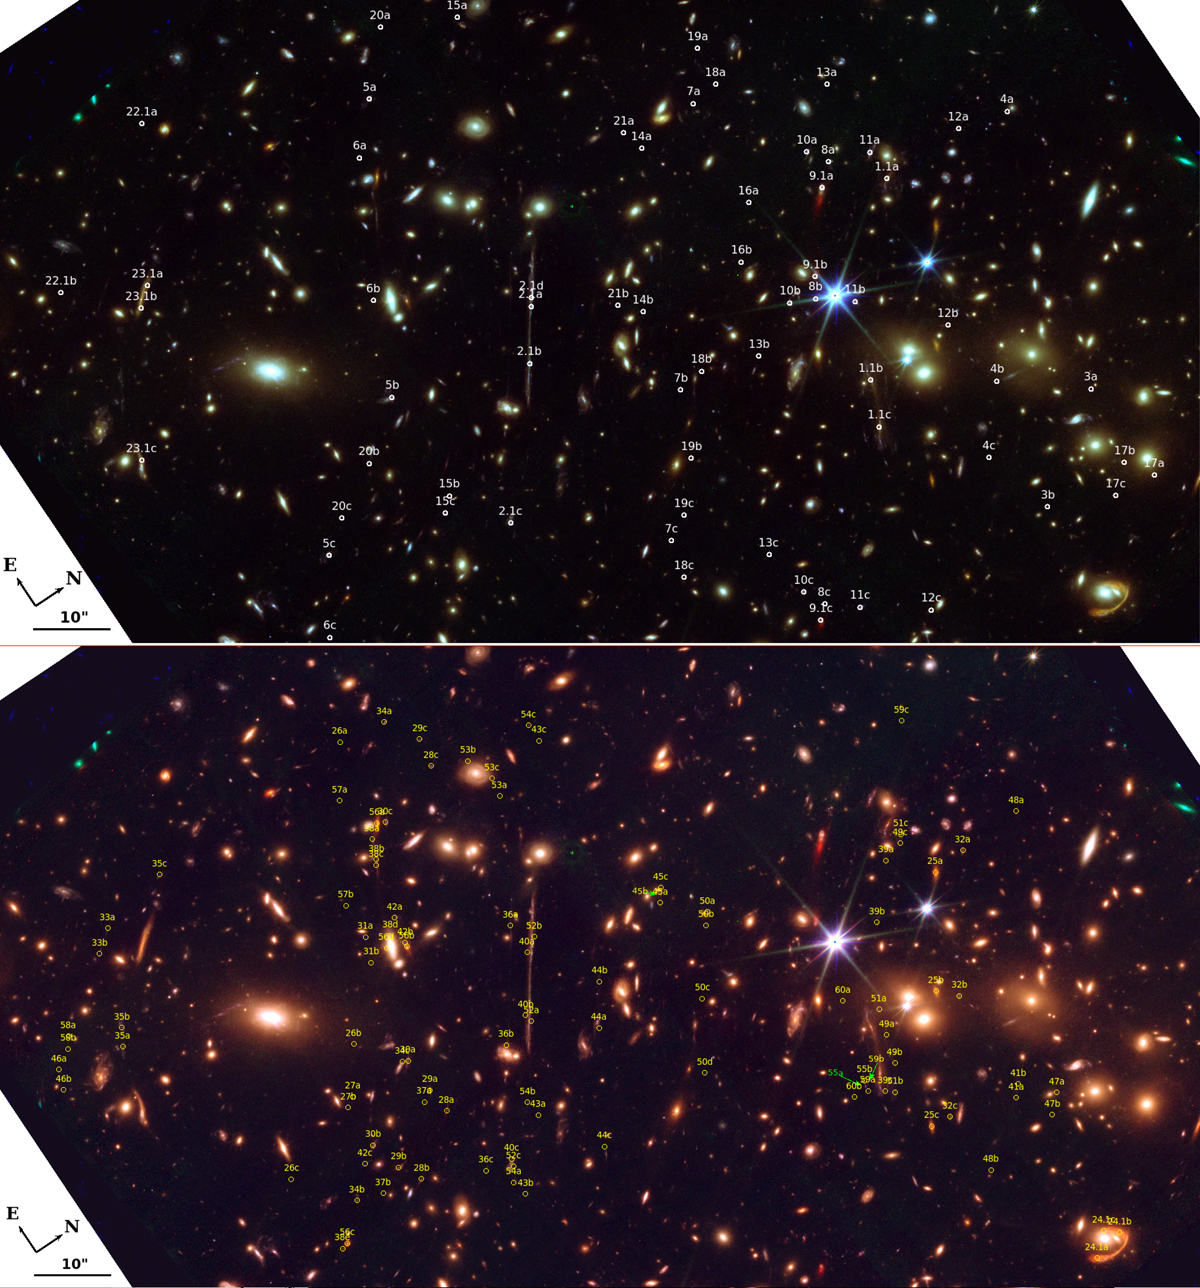 Na ilustracji: Zdjęcie gromady galaktyk El Gordo („Grubas” w j. hiszpańskim) z połączonych obrazów wykonanych przez Teleskop Hubble’a oraz Teleskop Webba (filtry w zakresie długości fali od λ~0,5 μm do ~5 μm). W obrazie galaktyki tła zniekształconym przez soczewkowanie grawitacyjne El Gordo, pomiędzy punktami oznaczonymi w górnym panelu jako 23.1a i 23.1b, znajduje się Quyllur, który jest najdalszym zaobserwowanym kandydatem na czerwonego nadolbrzyma. W górnym panelu białymi okręgami zaznaczono obiekty, które mają potwierdzenie spektroskopowe, zaś w dolnym panelu w żółtych okręgach zaznaczono kandydatów odkrytych ostatnio przez Teleskop Webba. Źródło (CC BY 4.0): Diego, J. M., i inni A&A 672, A3 (2023)